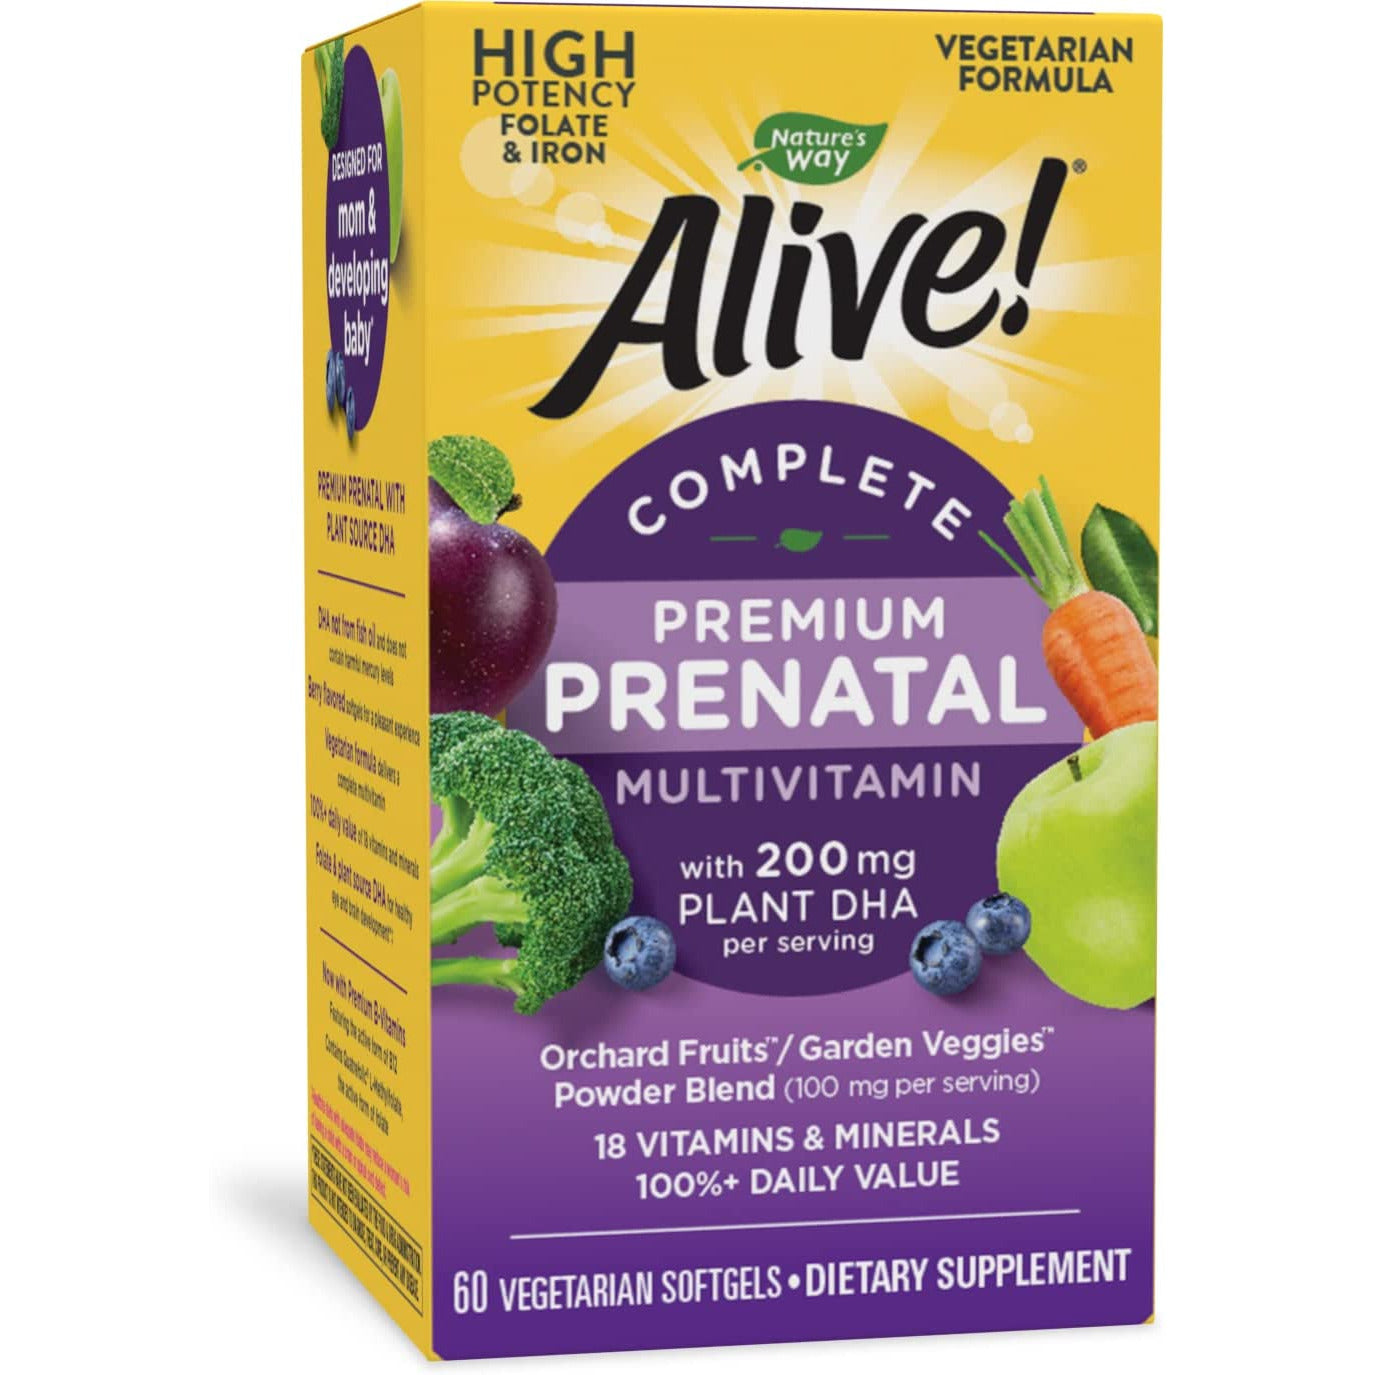 Nature's Way Alive! Complete Premium Prenatal Multivitamin for Women